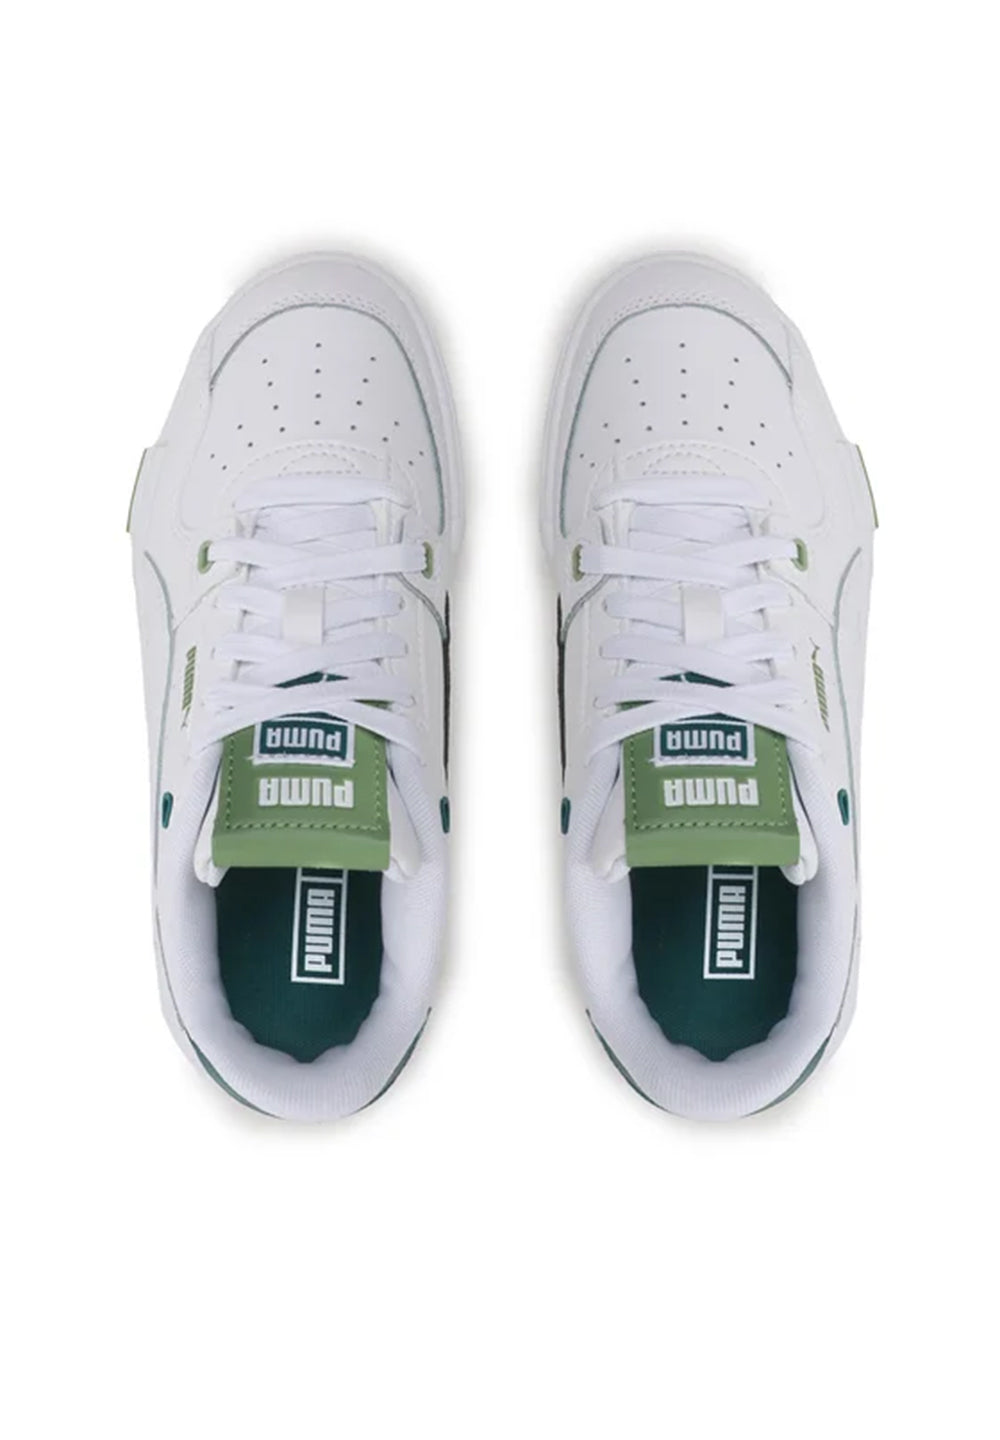 Weiß-grüne Schuhe für Kinder